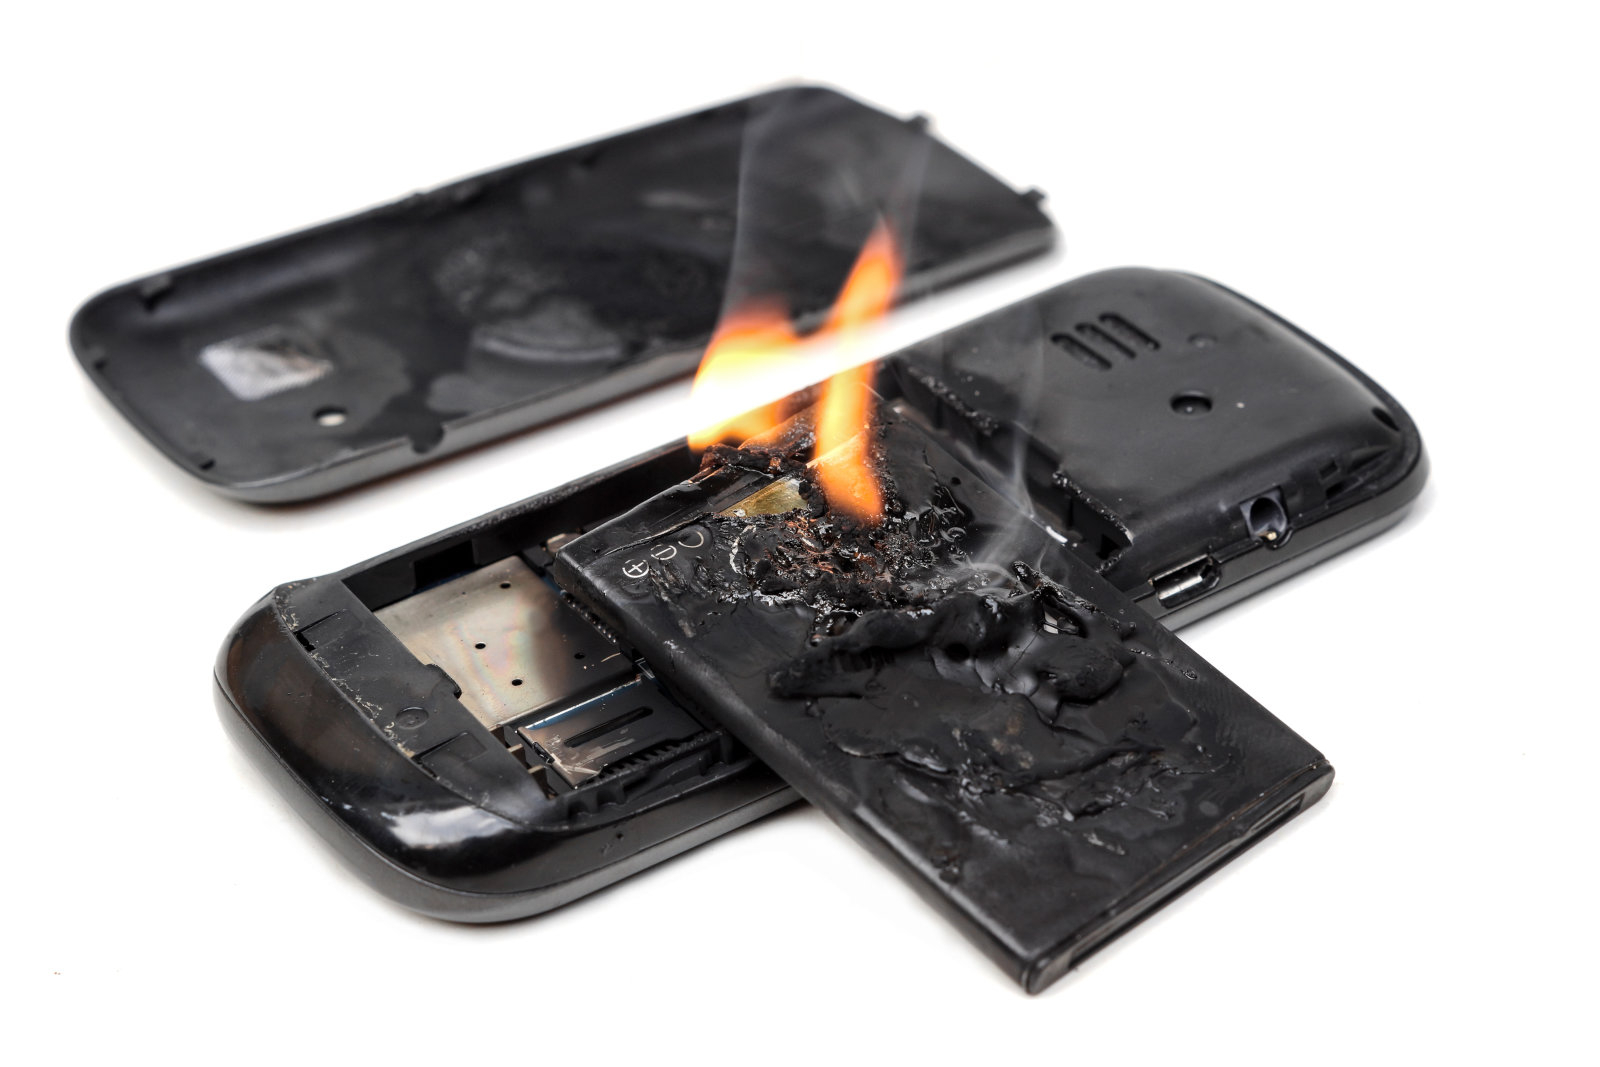 Литий-ионные аккумуляторы с ингибиторами горения могли бы помочь избежать случаев воспламенения аккумуляторов